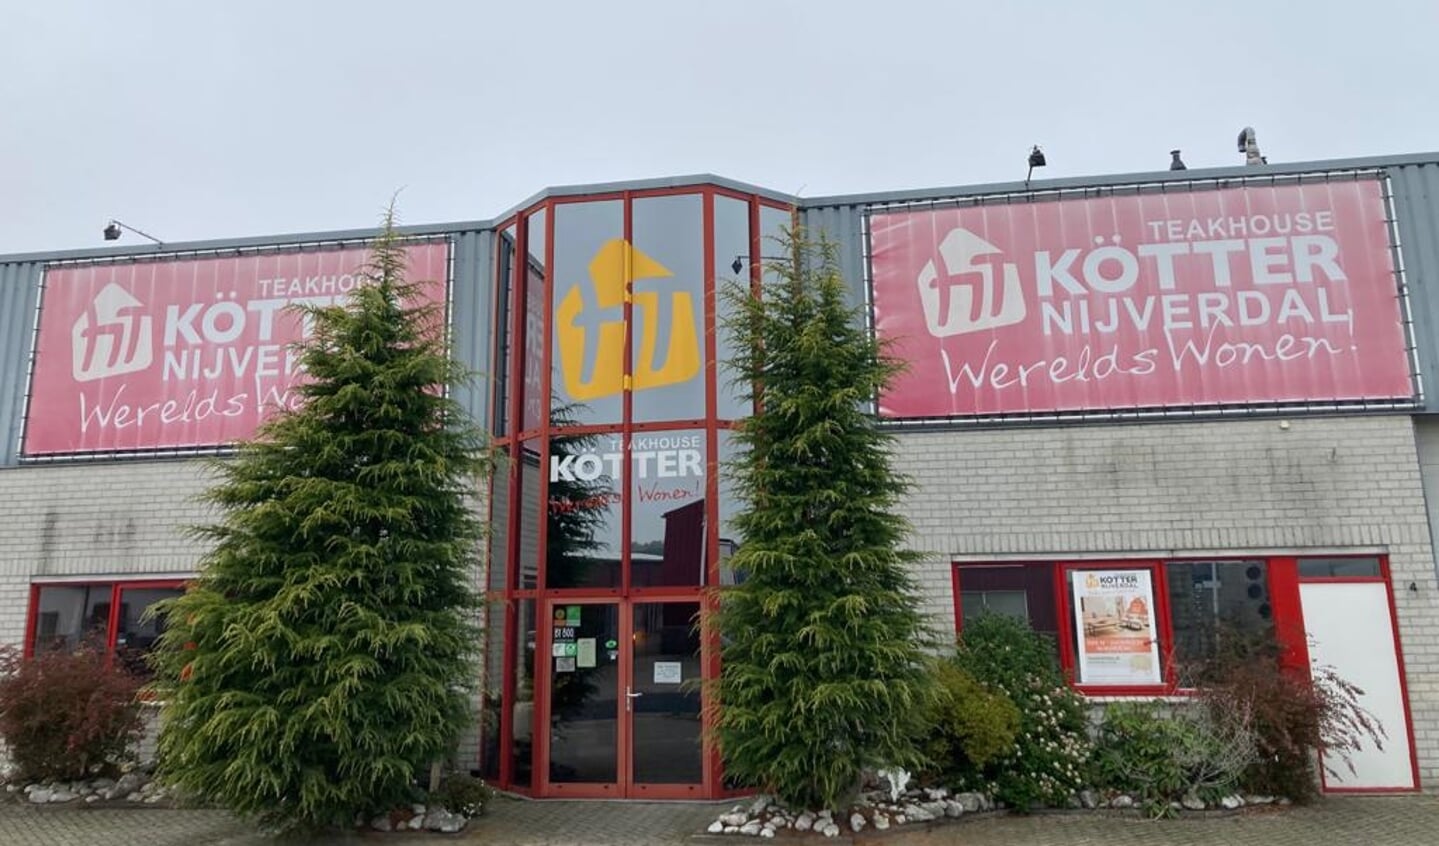 De winkel van Kötter Werelds Wonen Nijverdal, aan de Transportweg 4b, met een prachtig en onderscheidend assortiment meubelen.